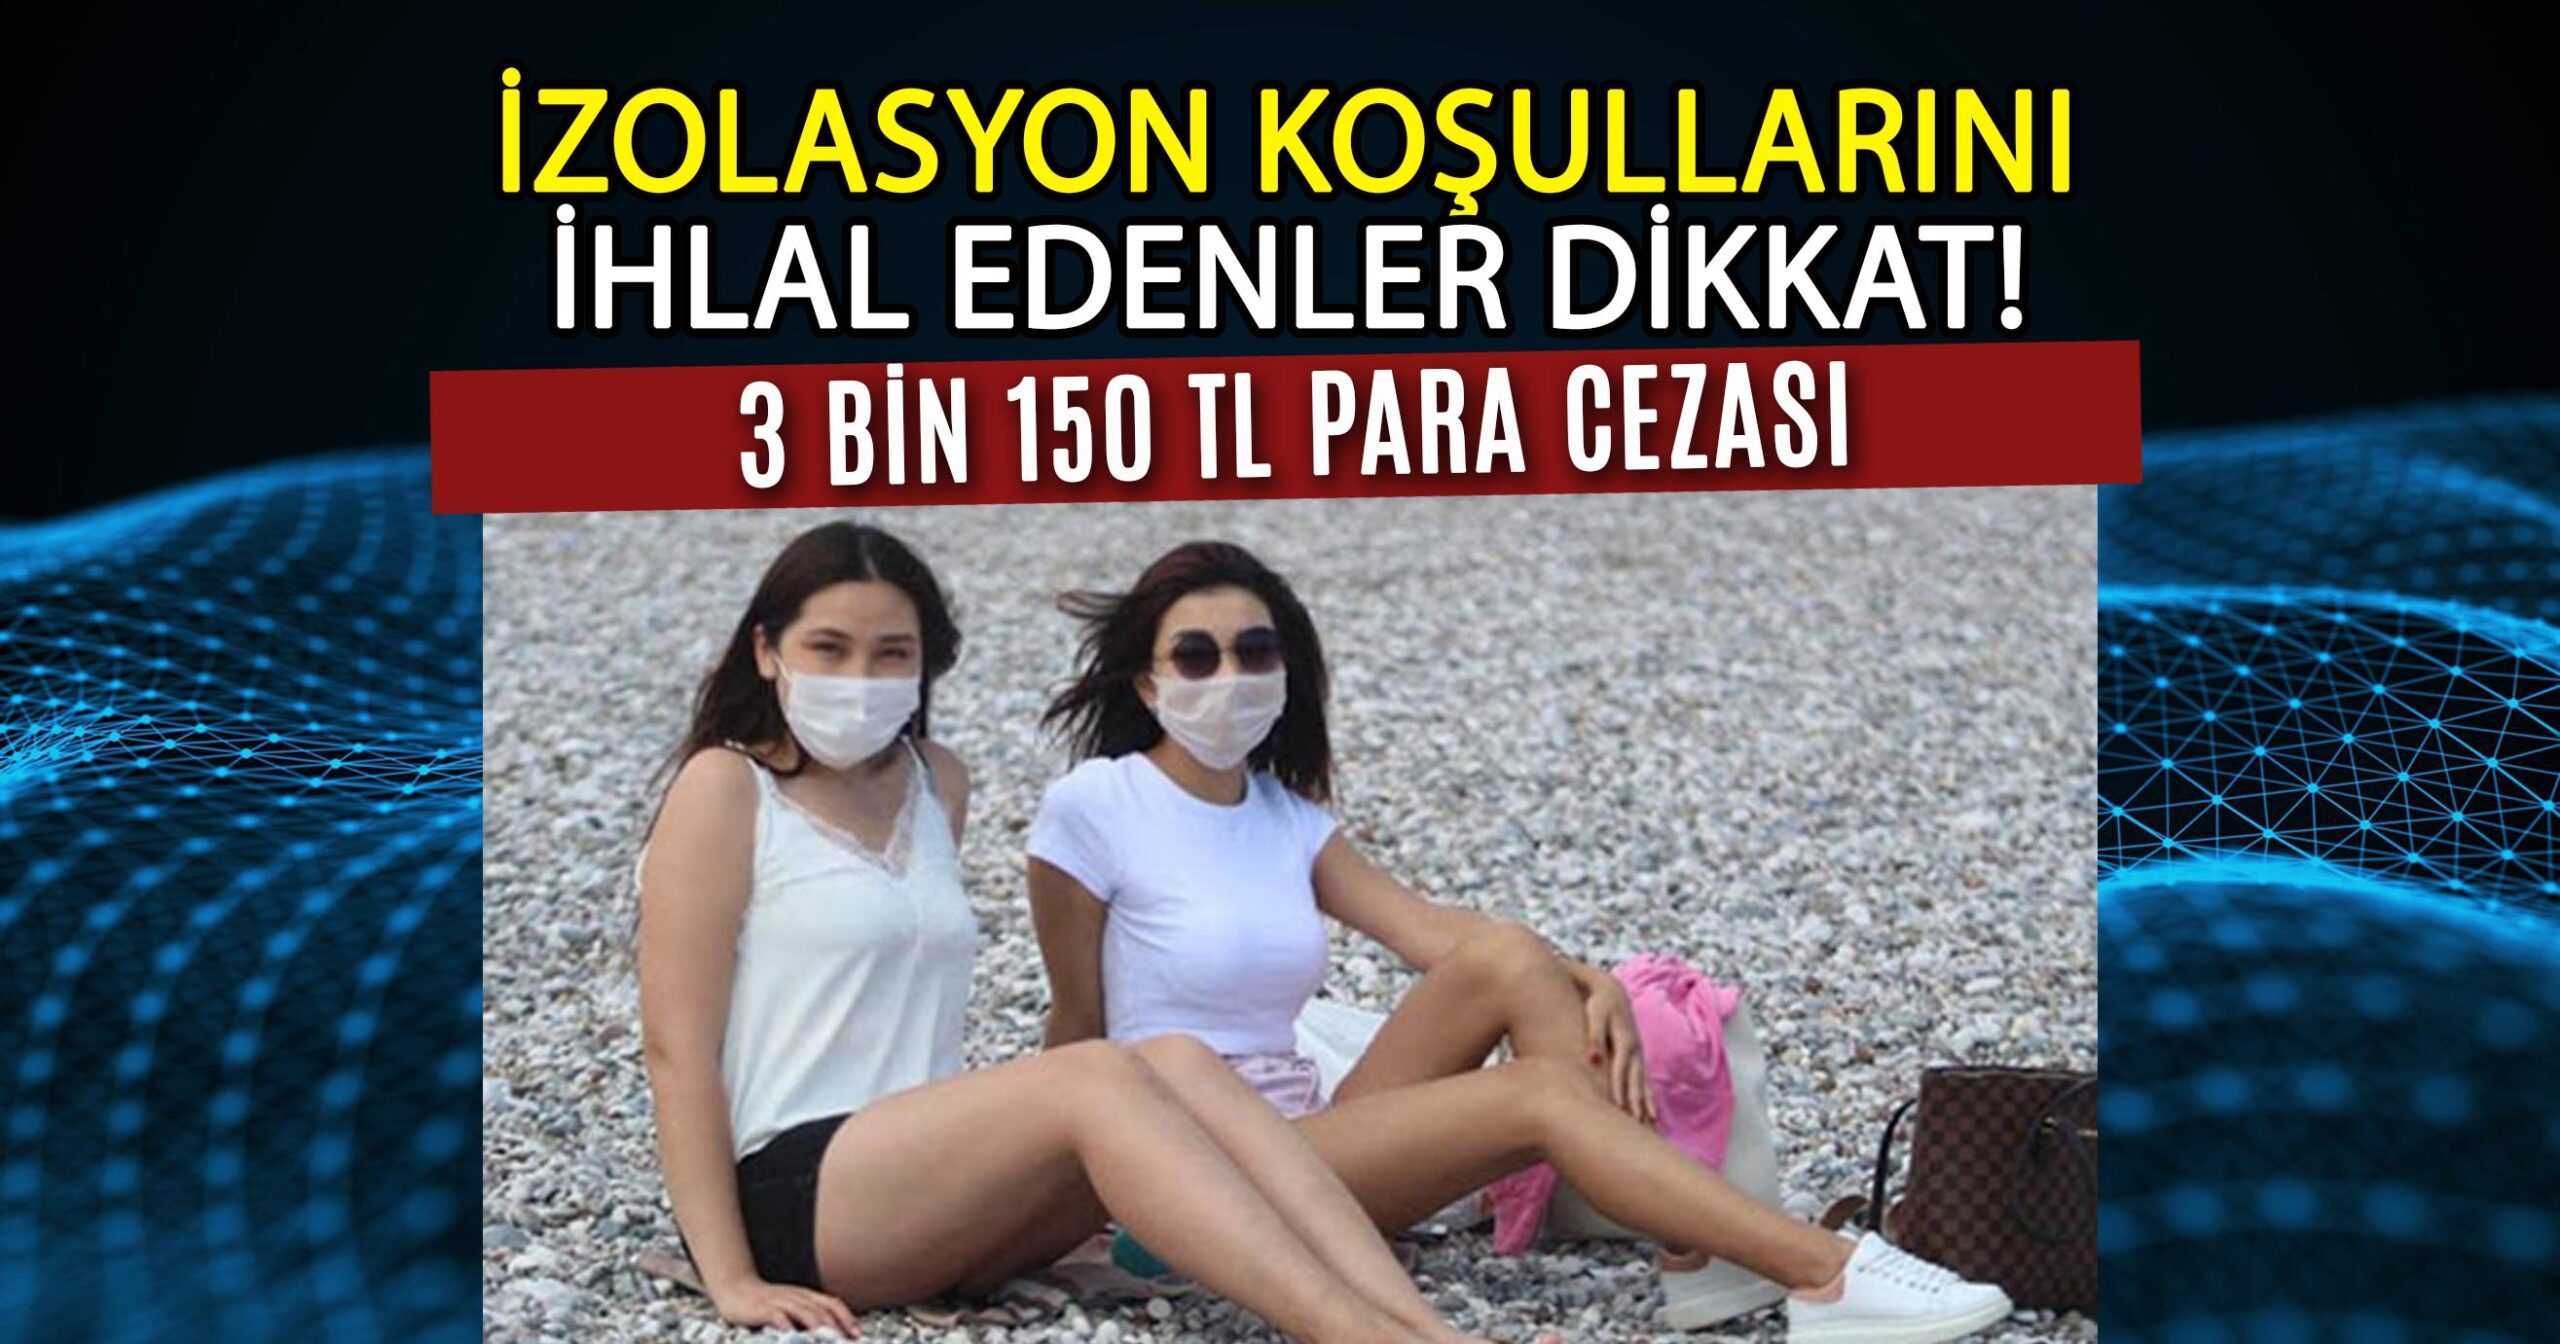 İZOLASYON KOŞULLARINI İHLAL EDENLER DİKKAT!